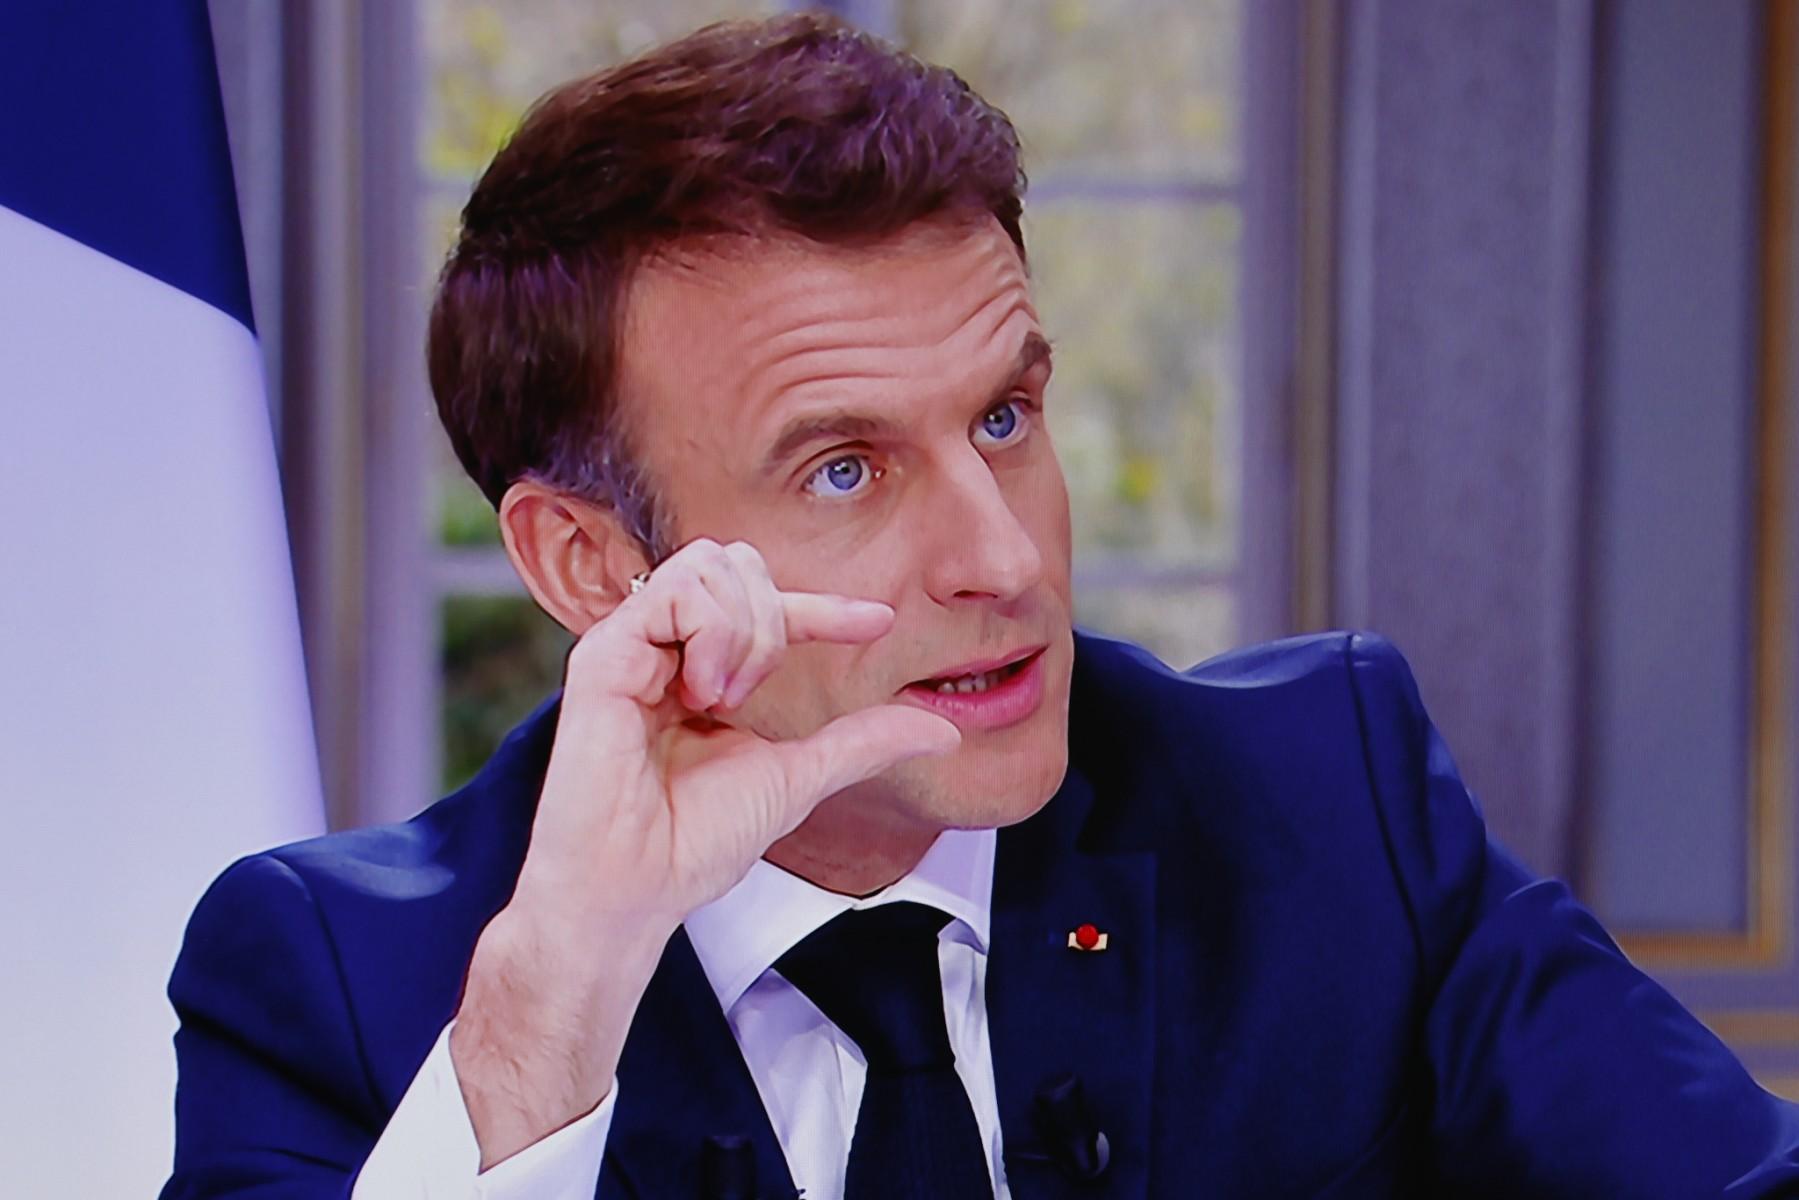 Prezydent Macron pokazuje cos dwoma palcami prawej dłoni